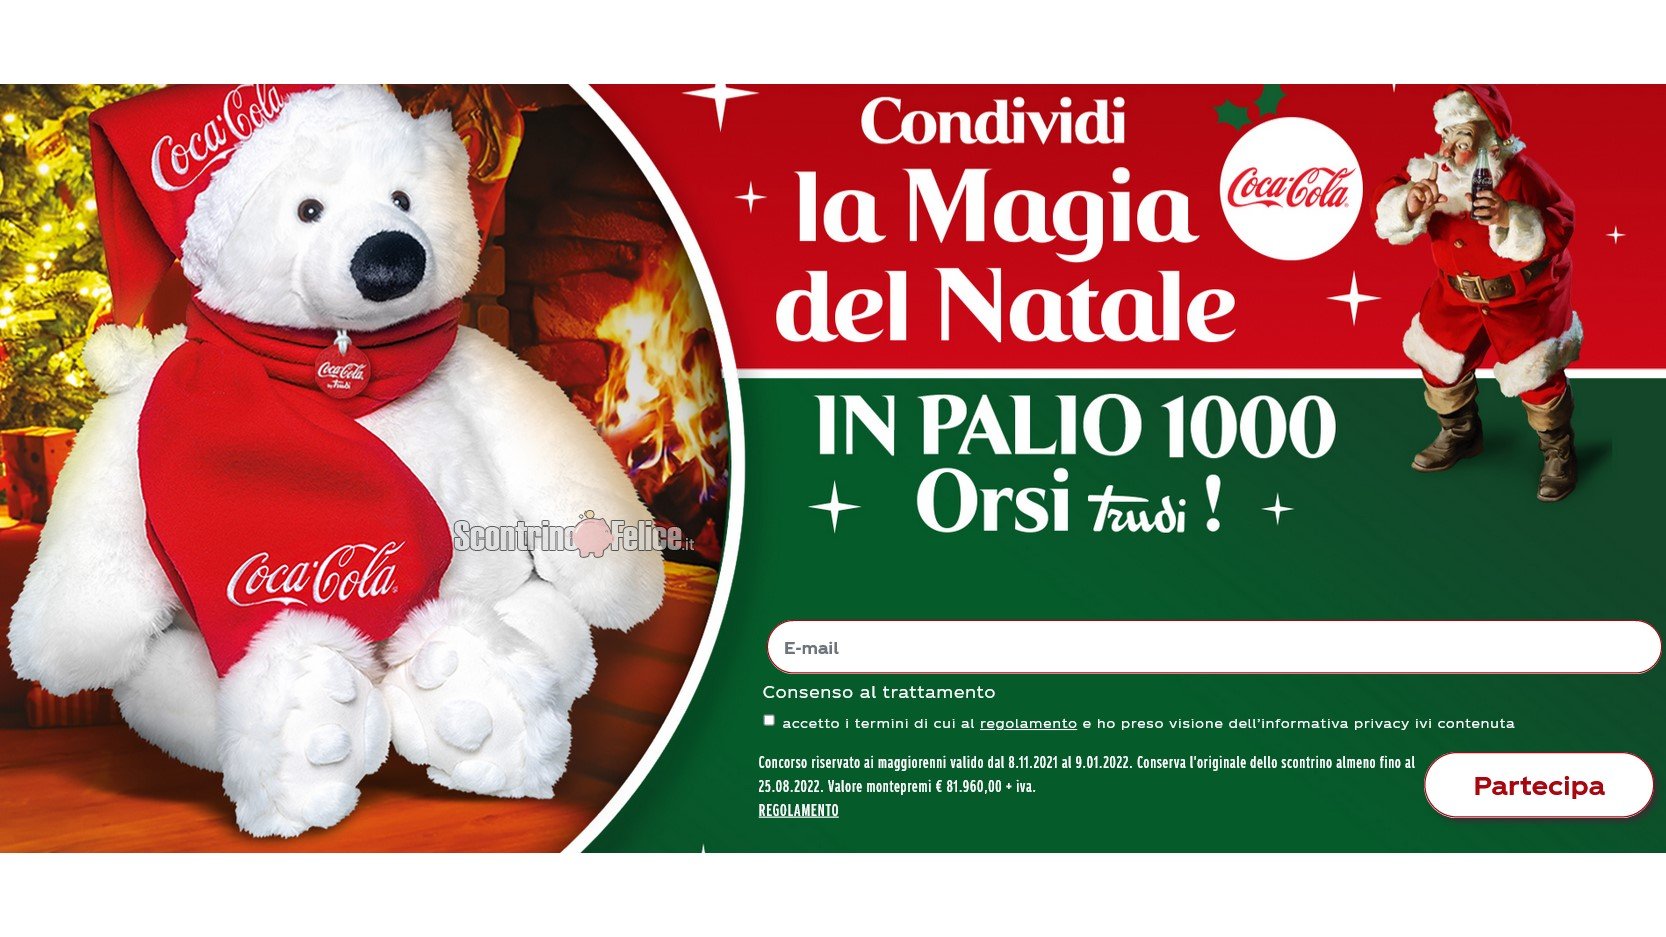 Concorso Coca-Cola, Fanta, Sprite, Kinley “Condividi La Magia Del Natale”: vinci 1000 orsi di peluche Trudi